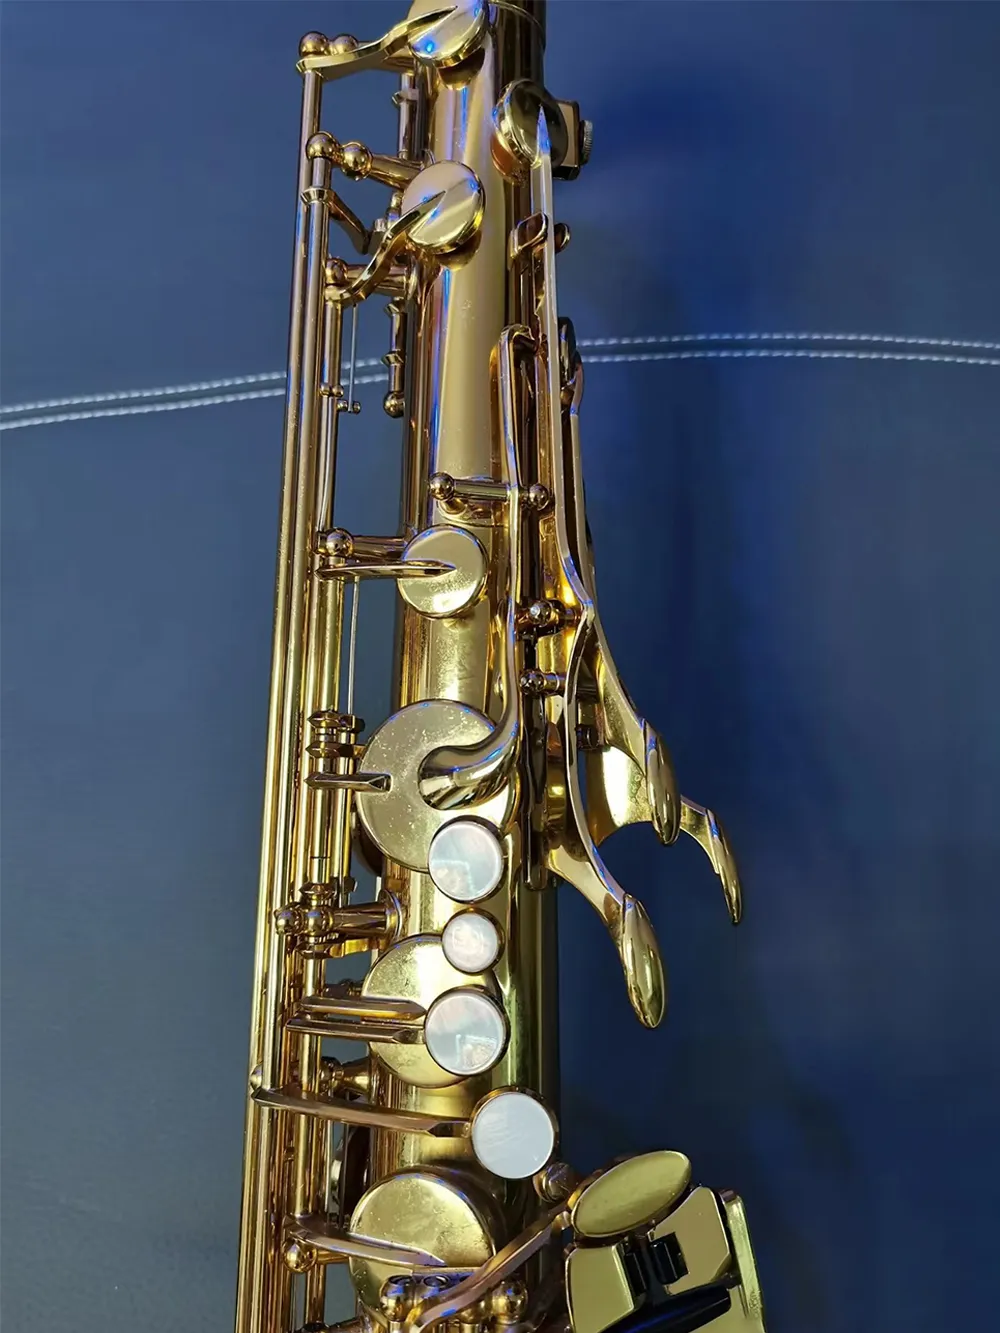 Klasyczny YTS-480 STRUKTURY Model B-Key Professional Tenor Saksofon Jazz Instrument Wygodne poczuć saksofonowy ton klasy profesjonalnej